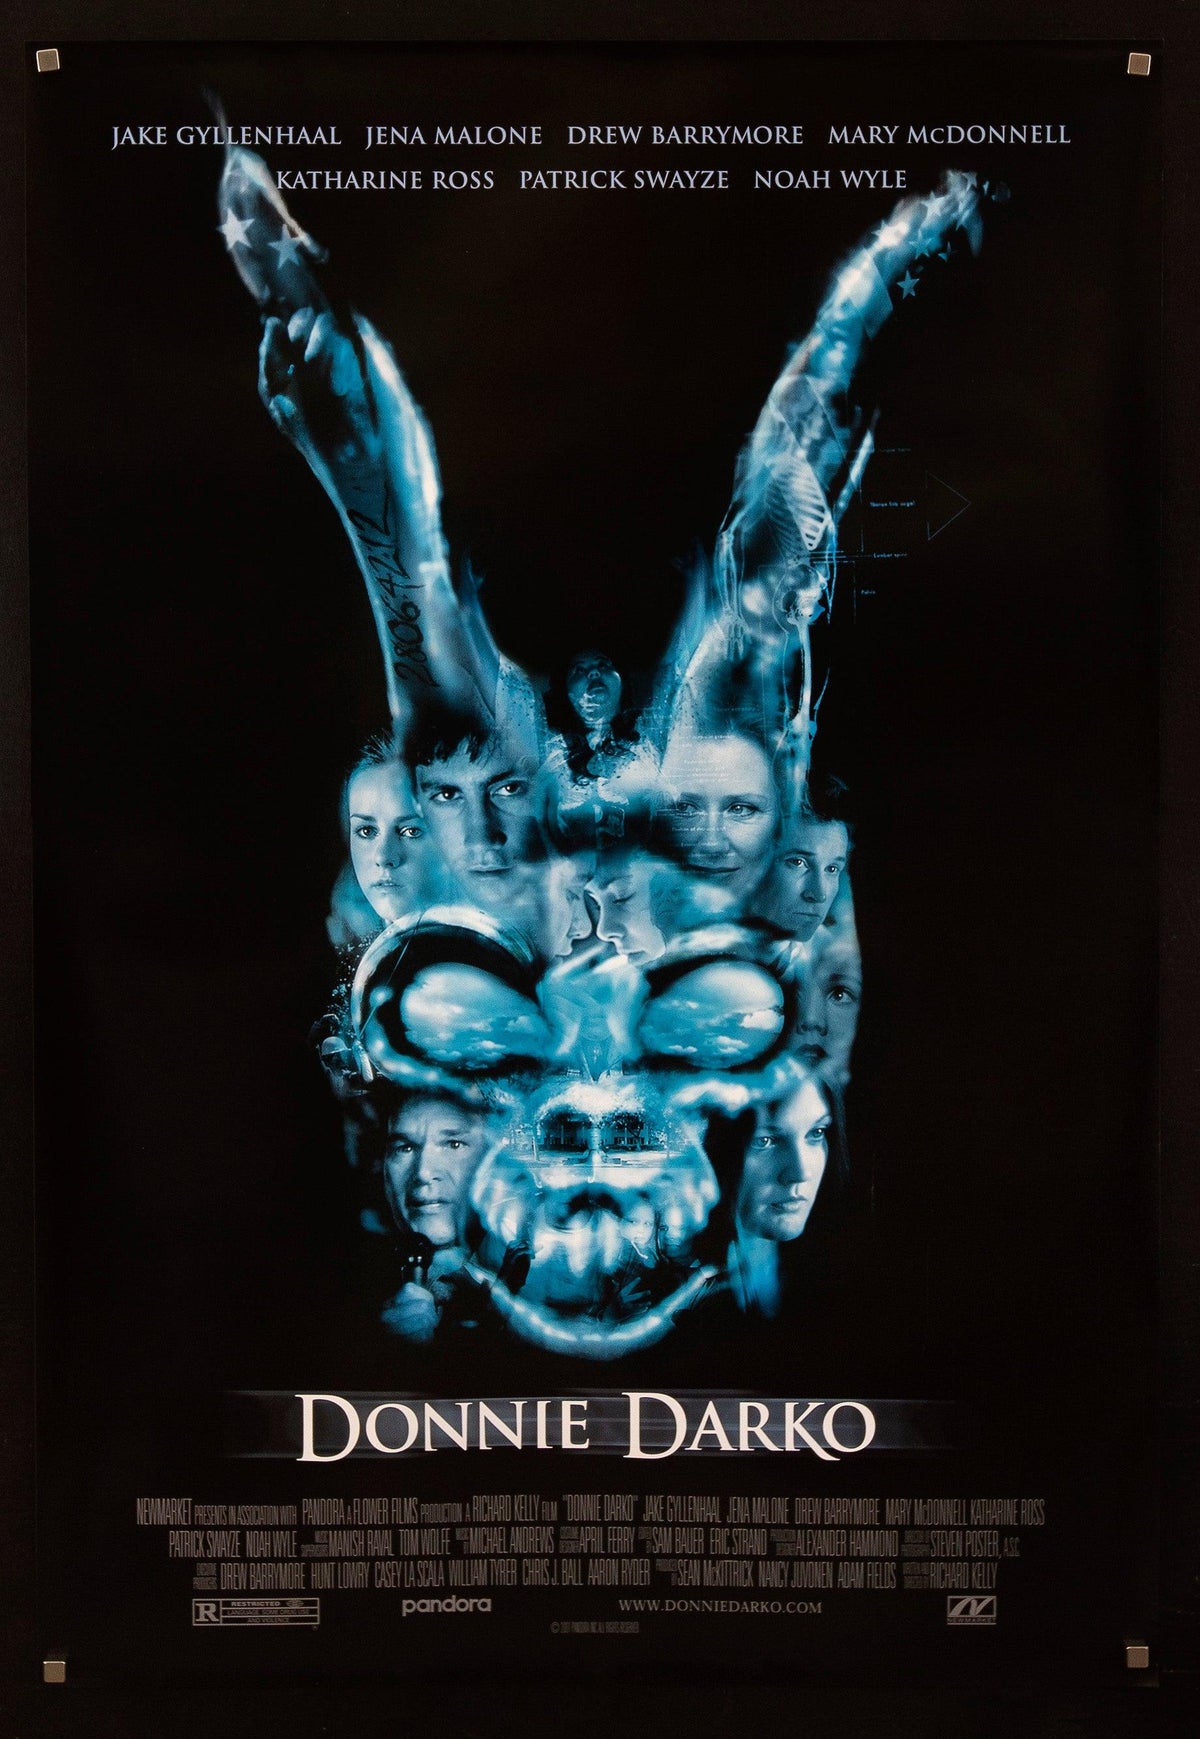 Donnie Darko 1 Sheet (27x41) Original Vintage Movie Poster